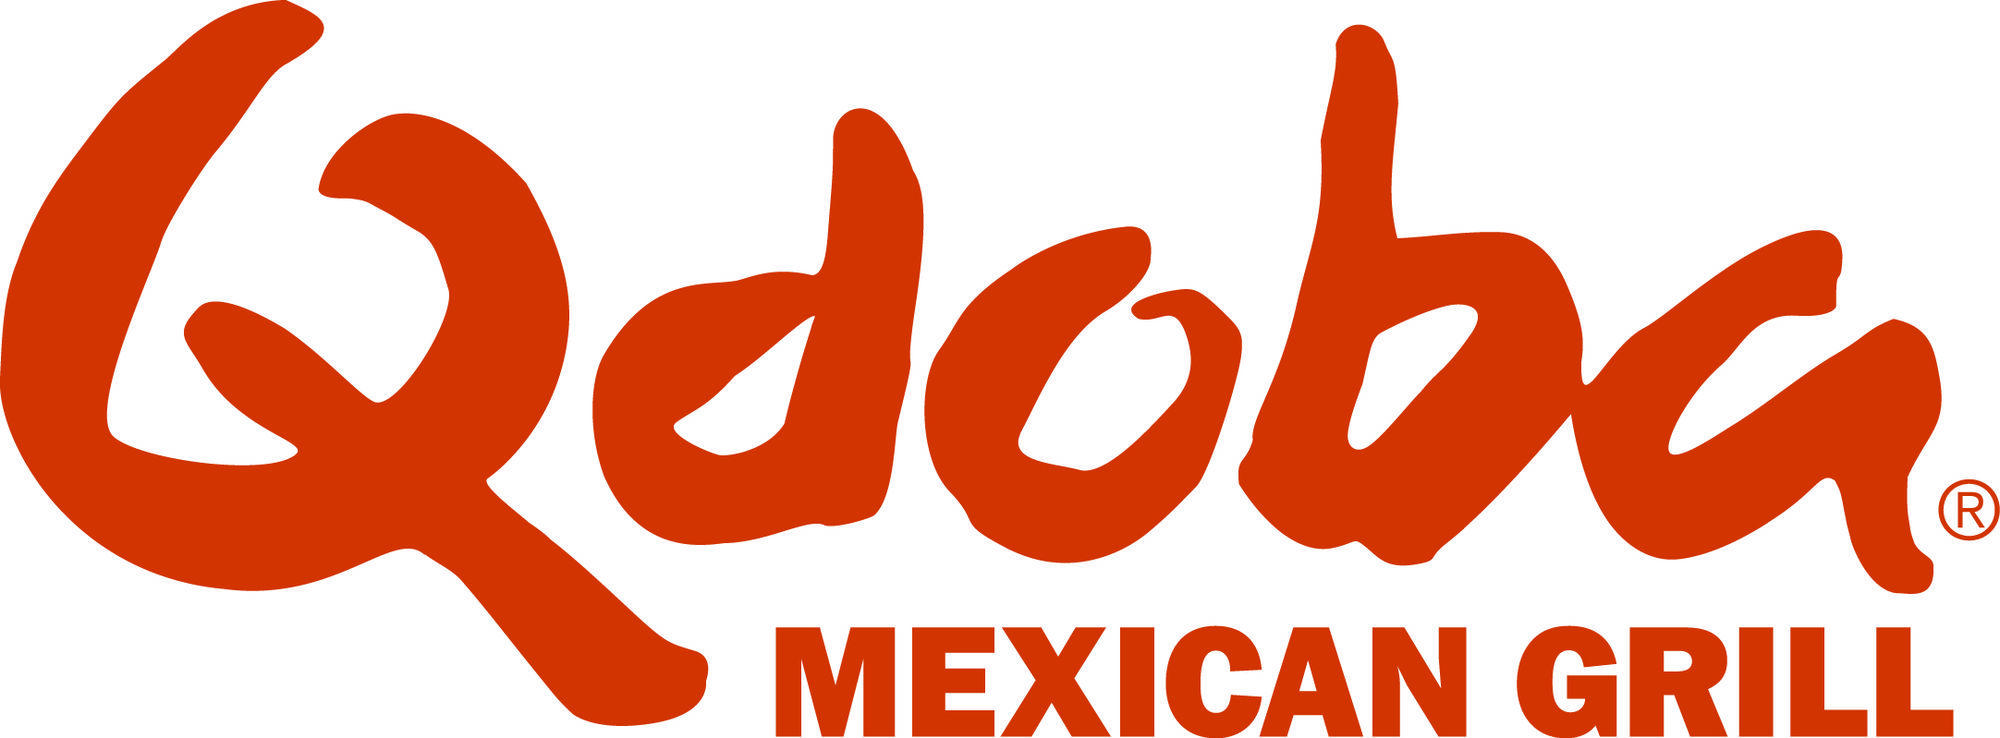 Qdoba Logo - Qdoba | Logopedia | FANDOM powered by Wikia